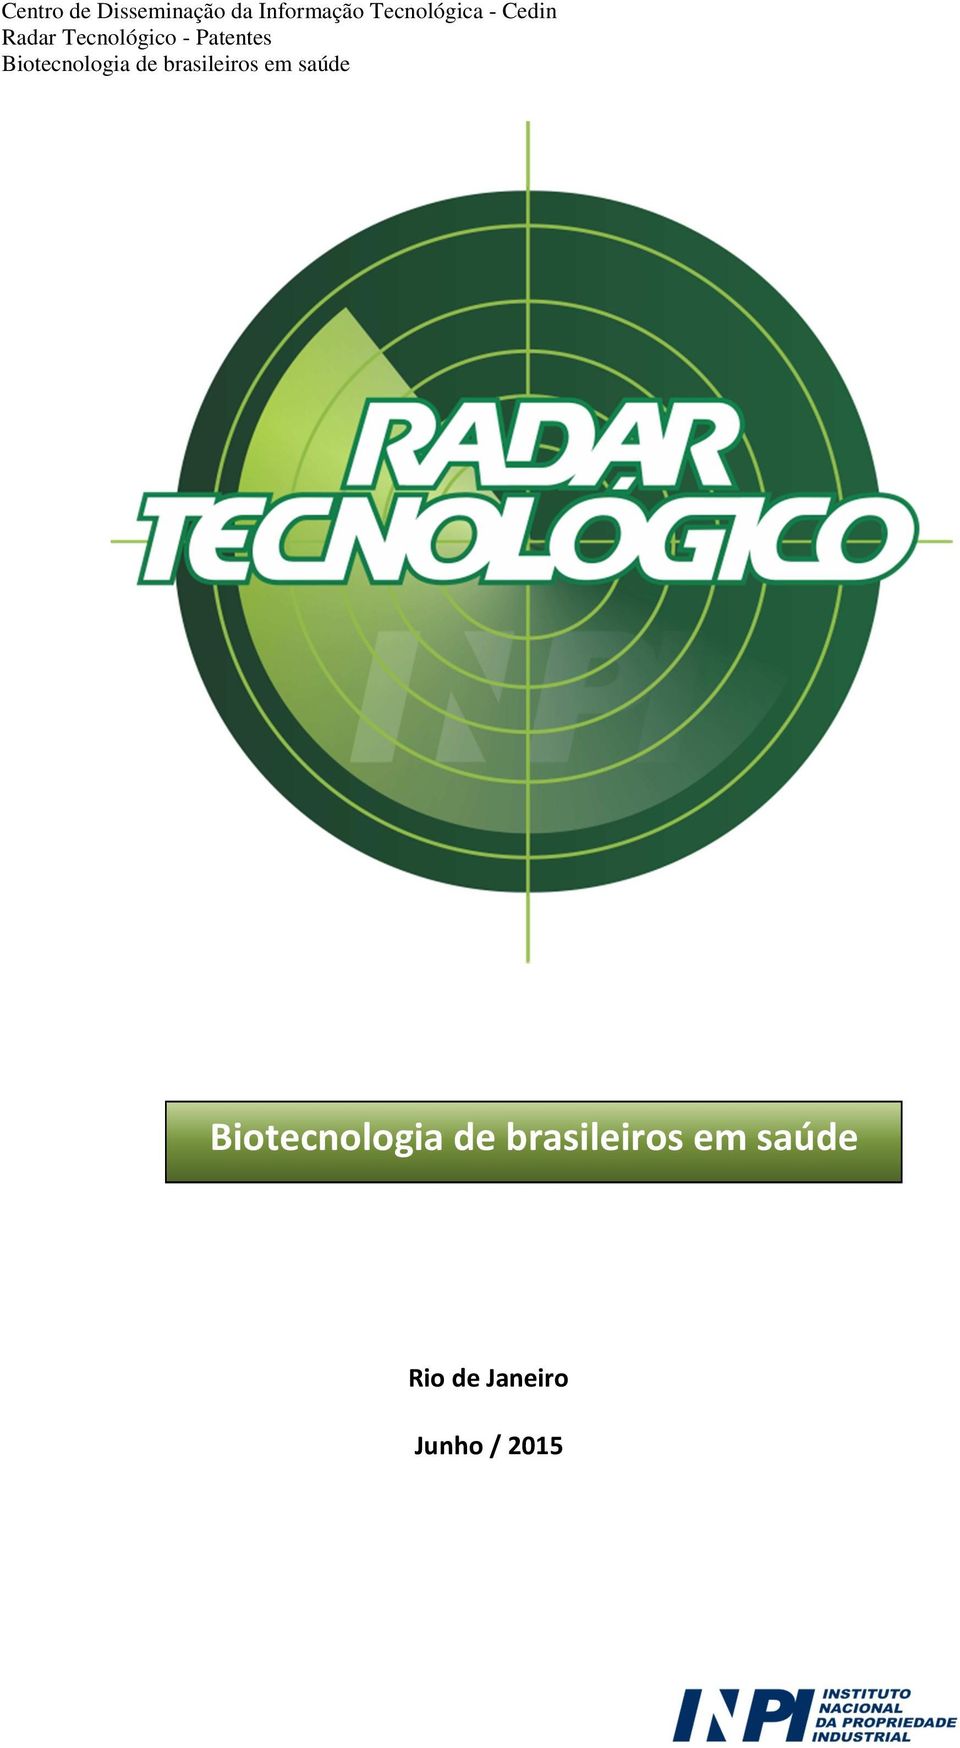 Patentes Biotecnologia de brasileiros em saúde